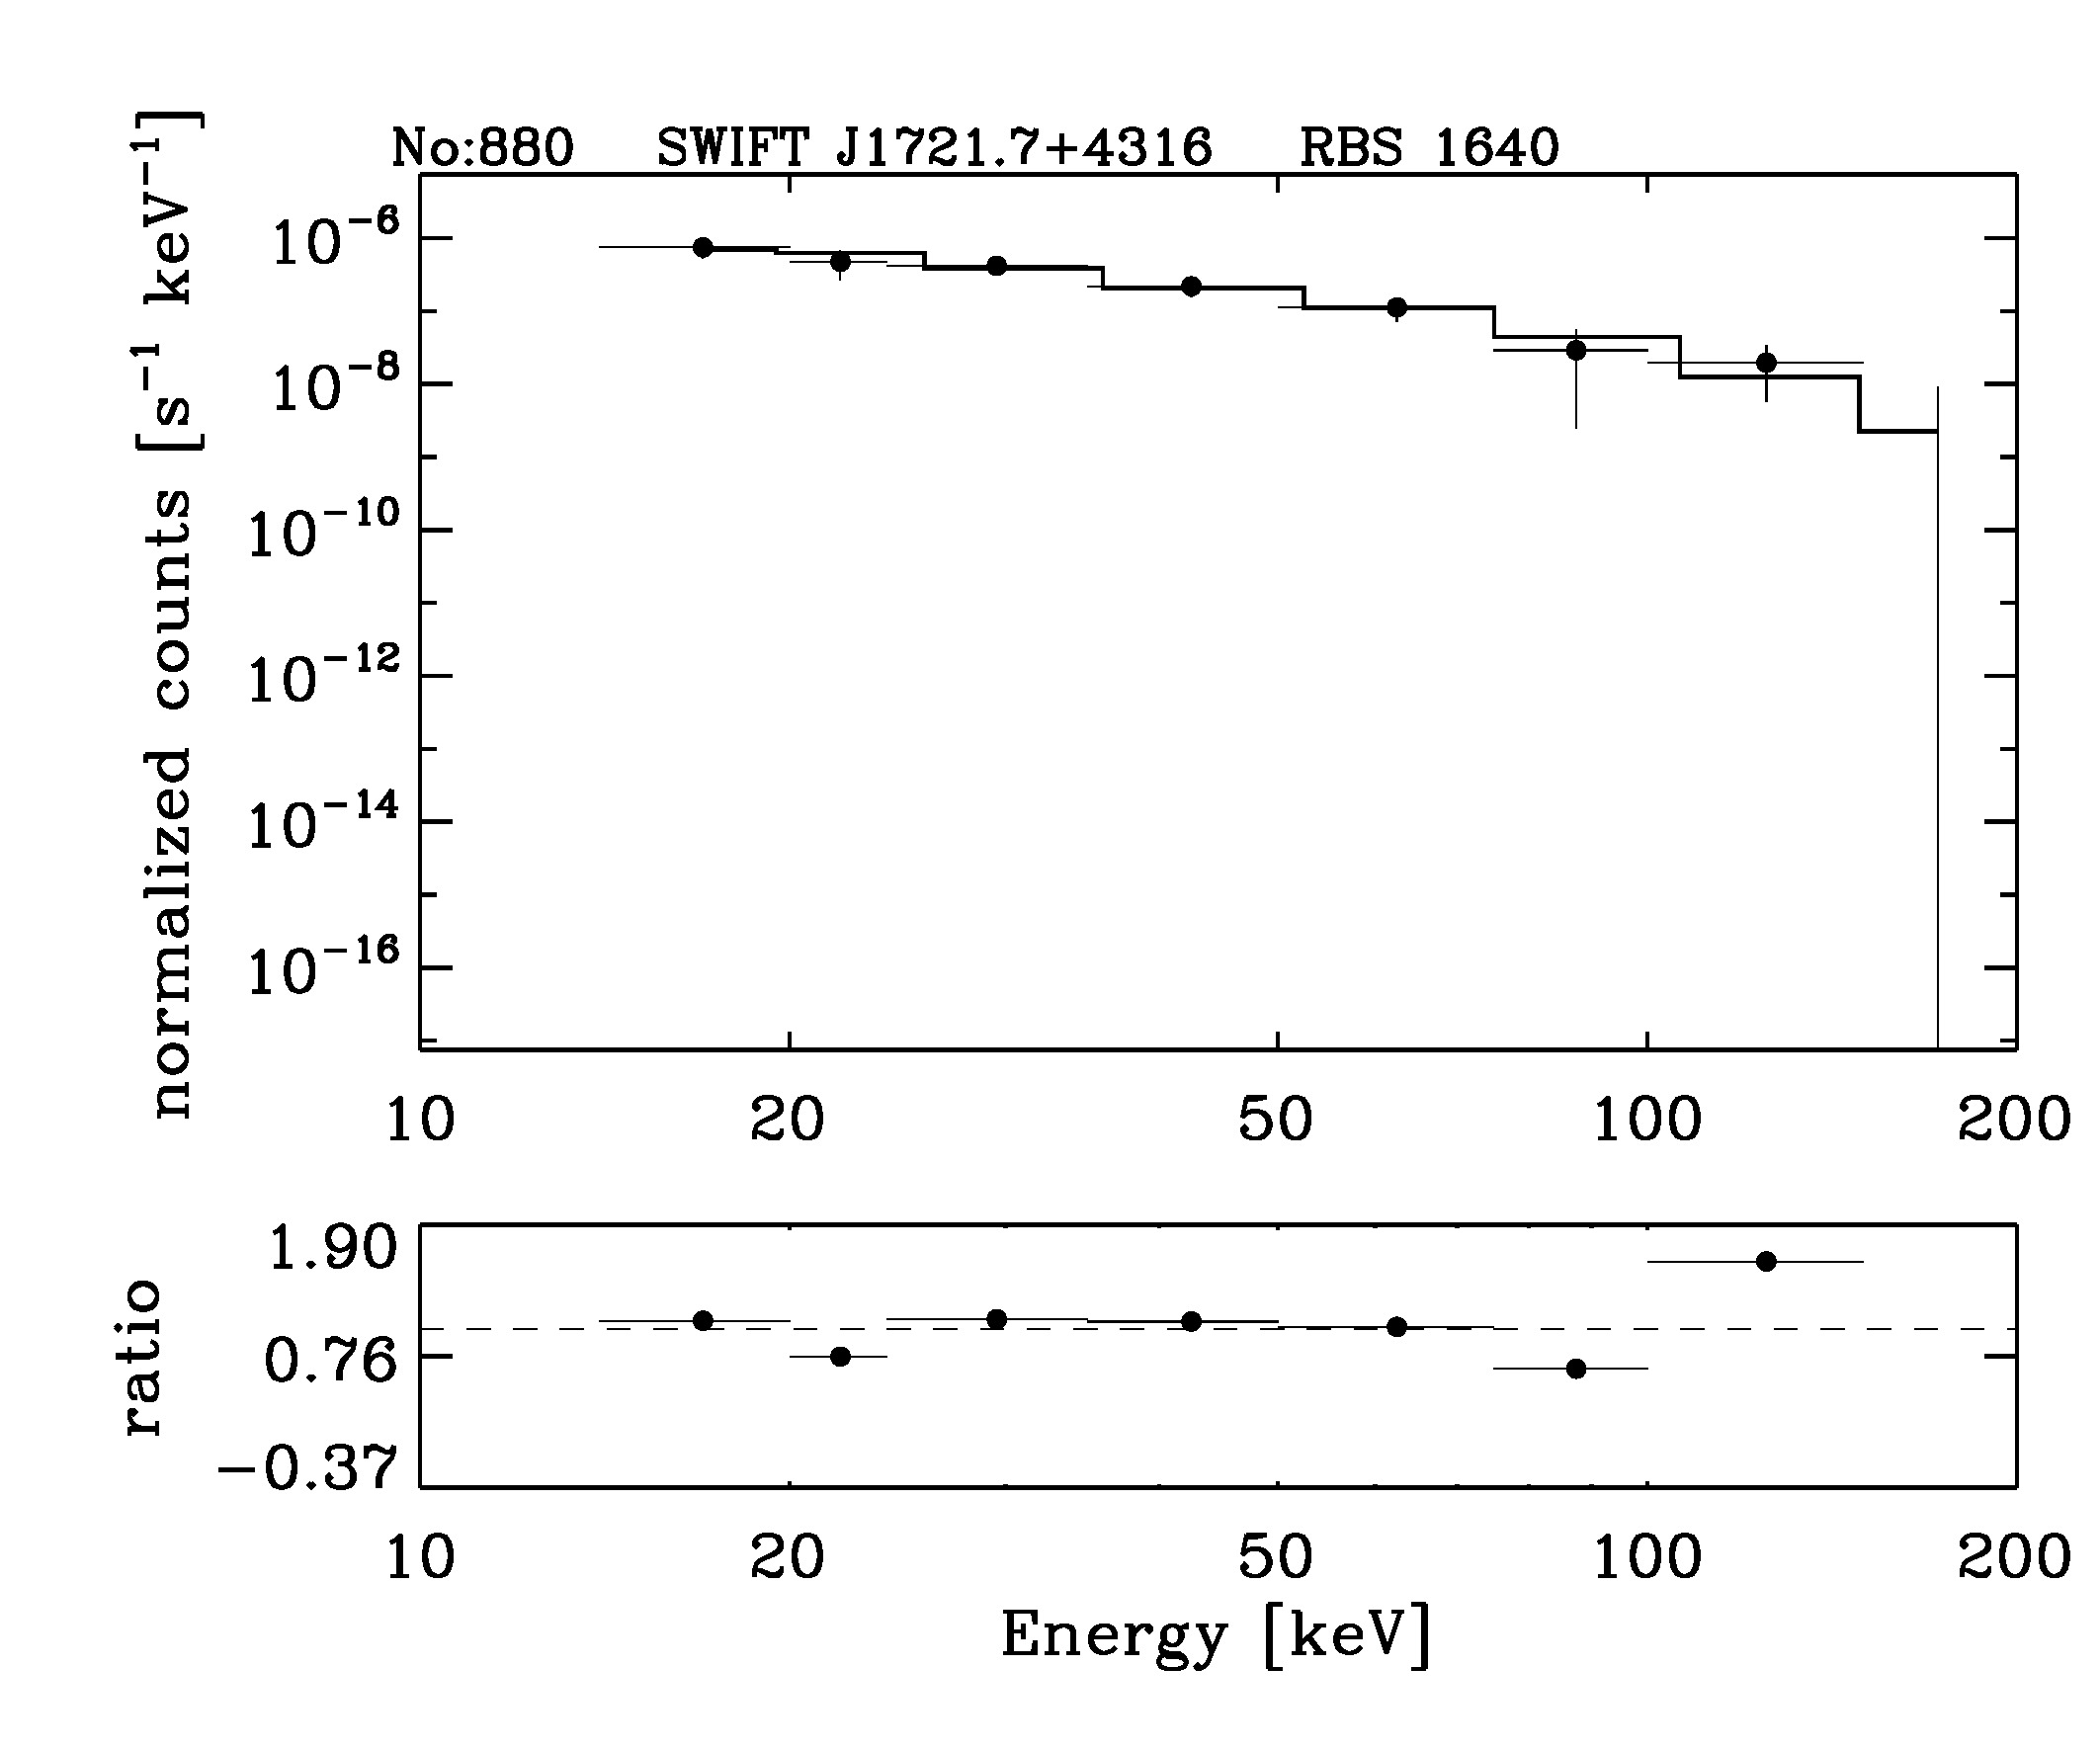 BAT Spectrum for SWIFT J1721.7+4316